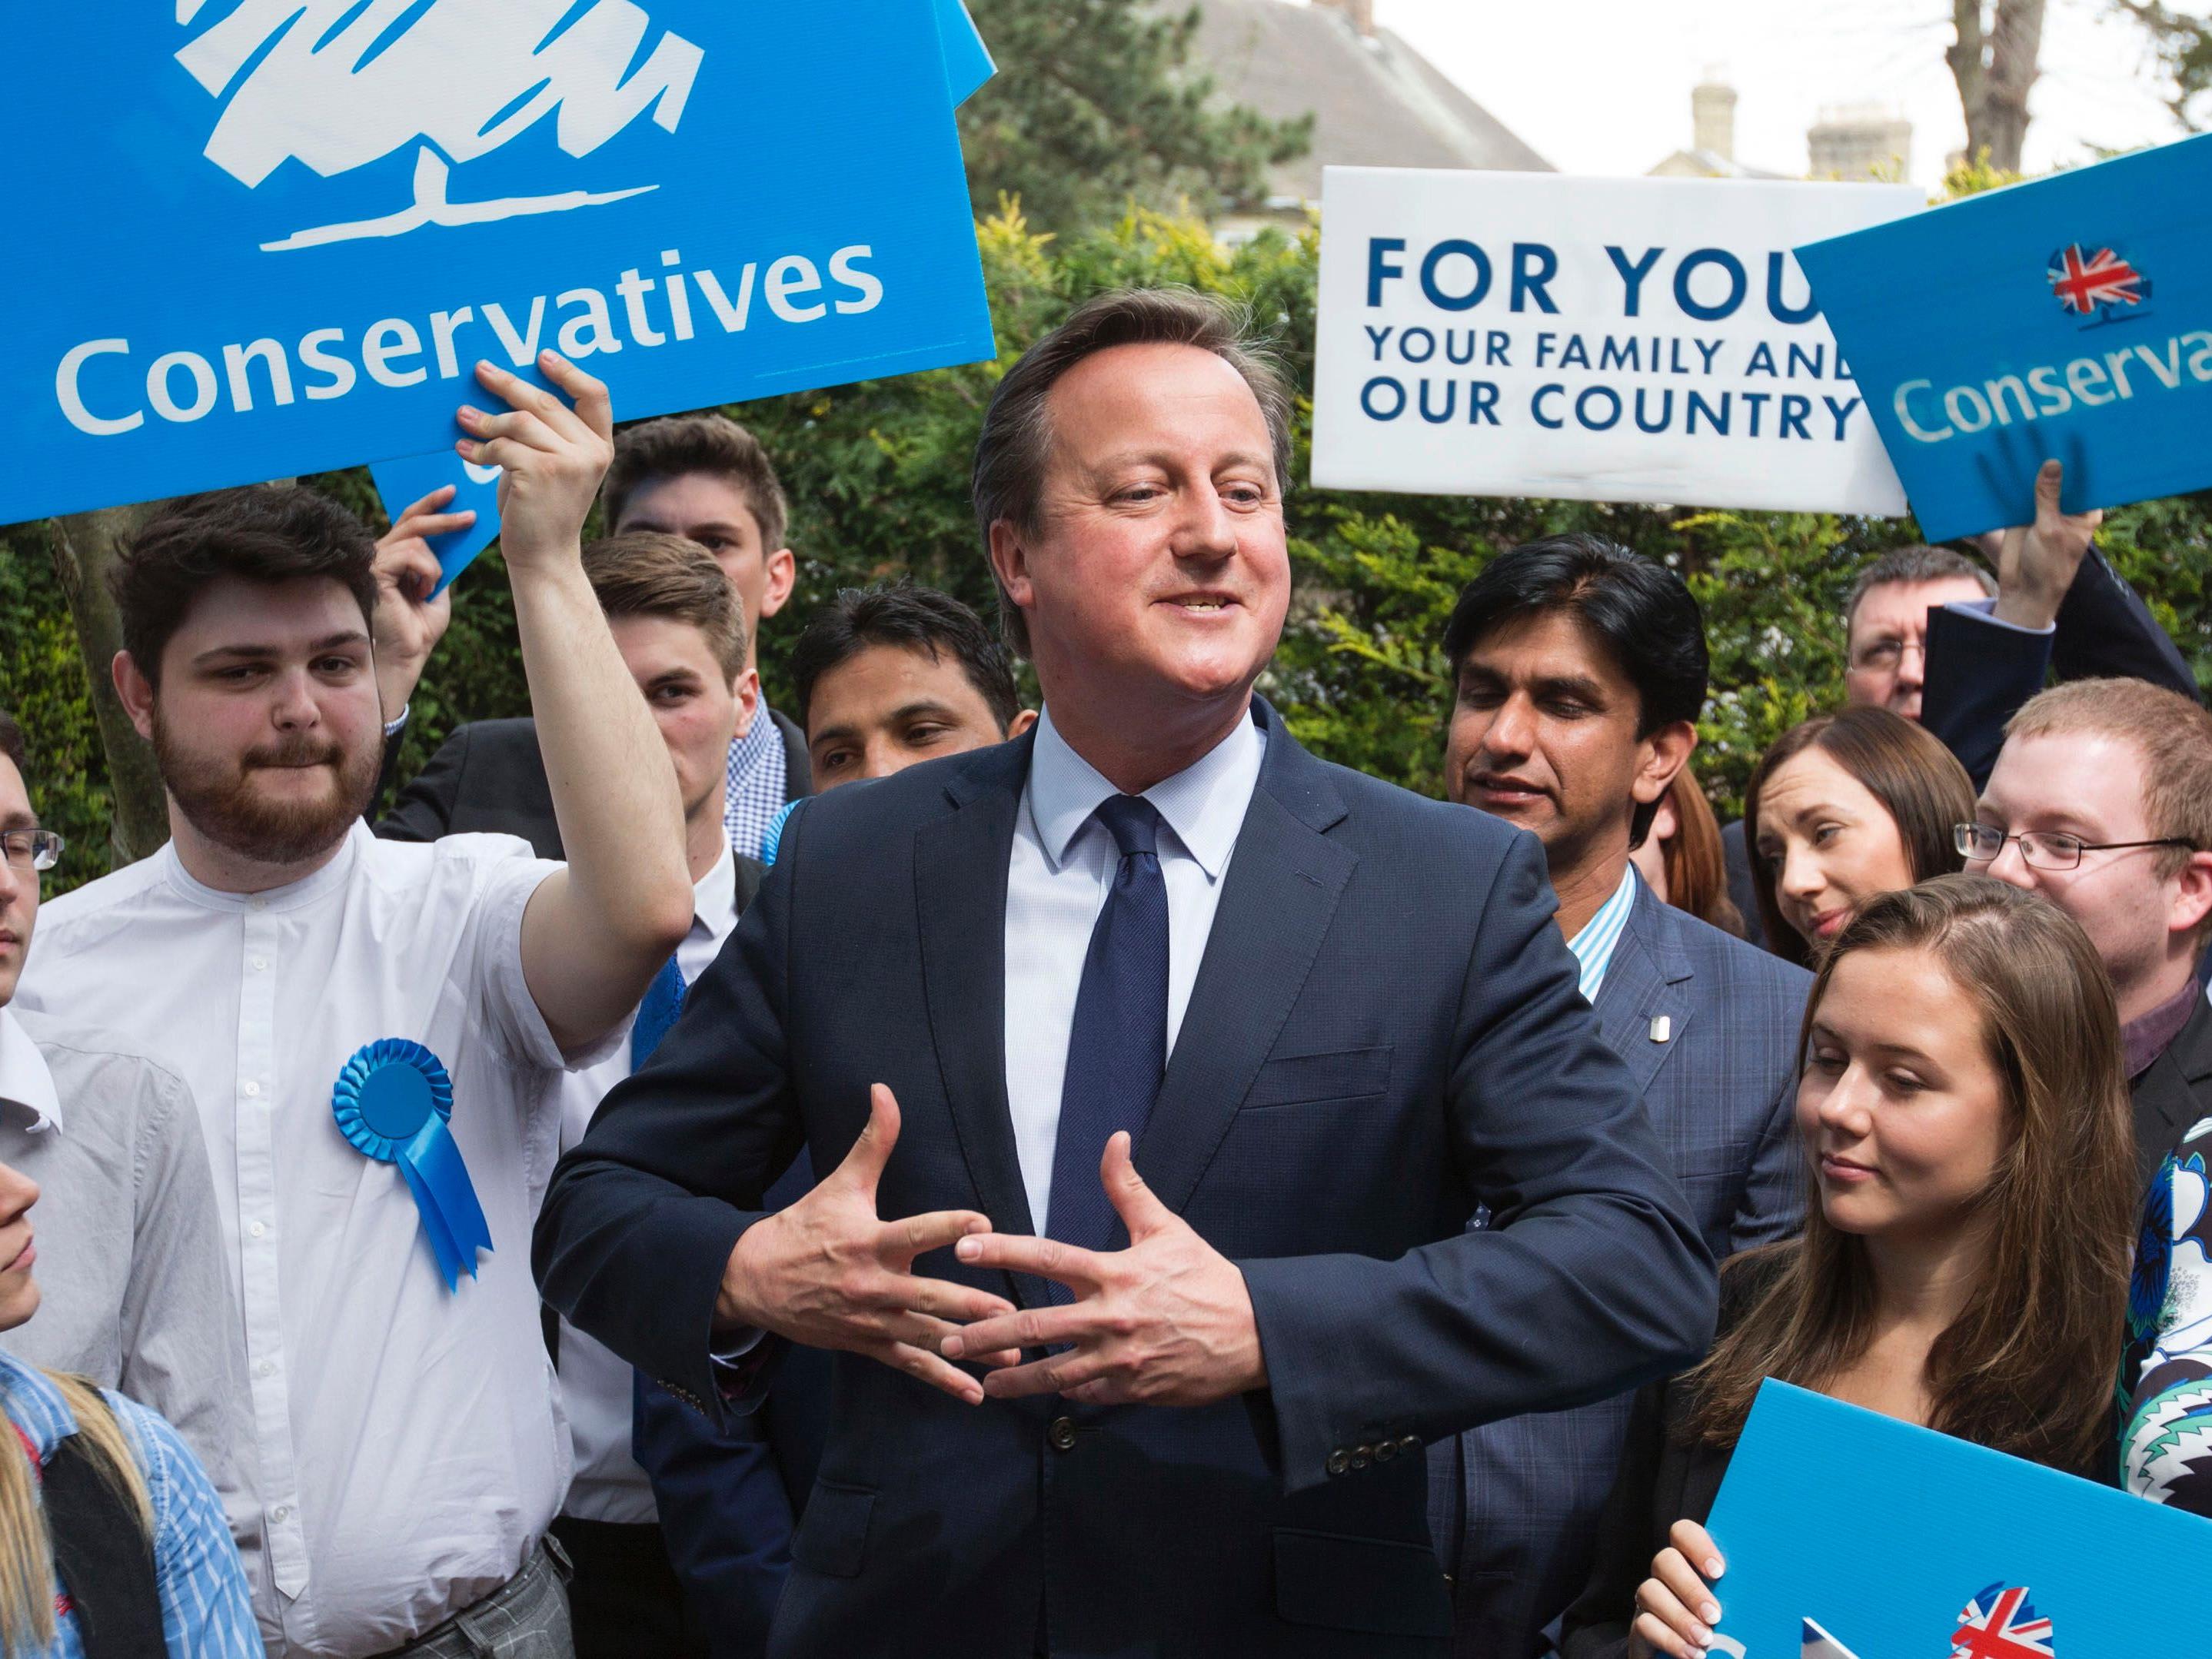 Die britische Regierung unter Premierminister David Cameron hat angekündigt, dass am 23. Juni 2016 ein Referendum zum Verbleib Großbritanniens in der EU abgehalten wird.